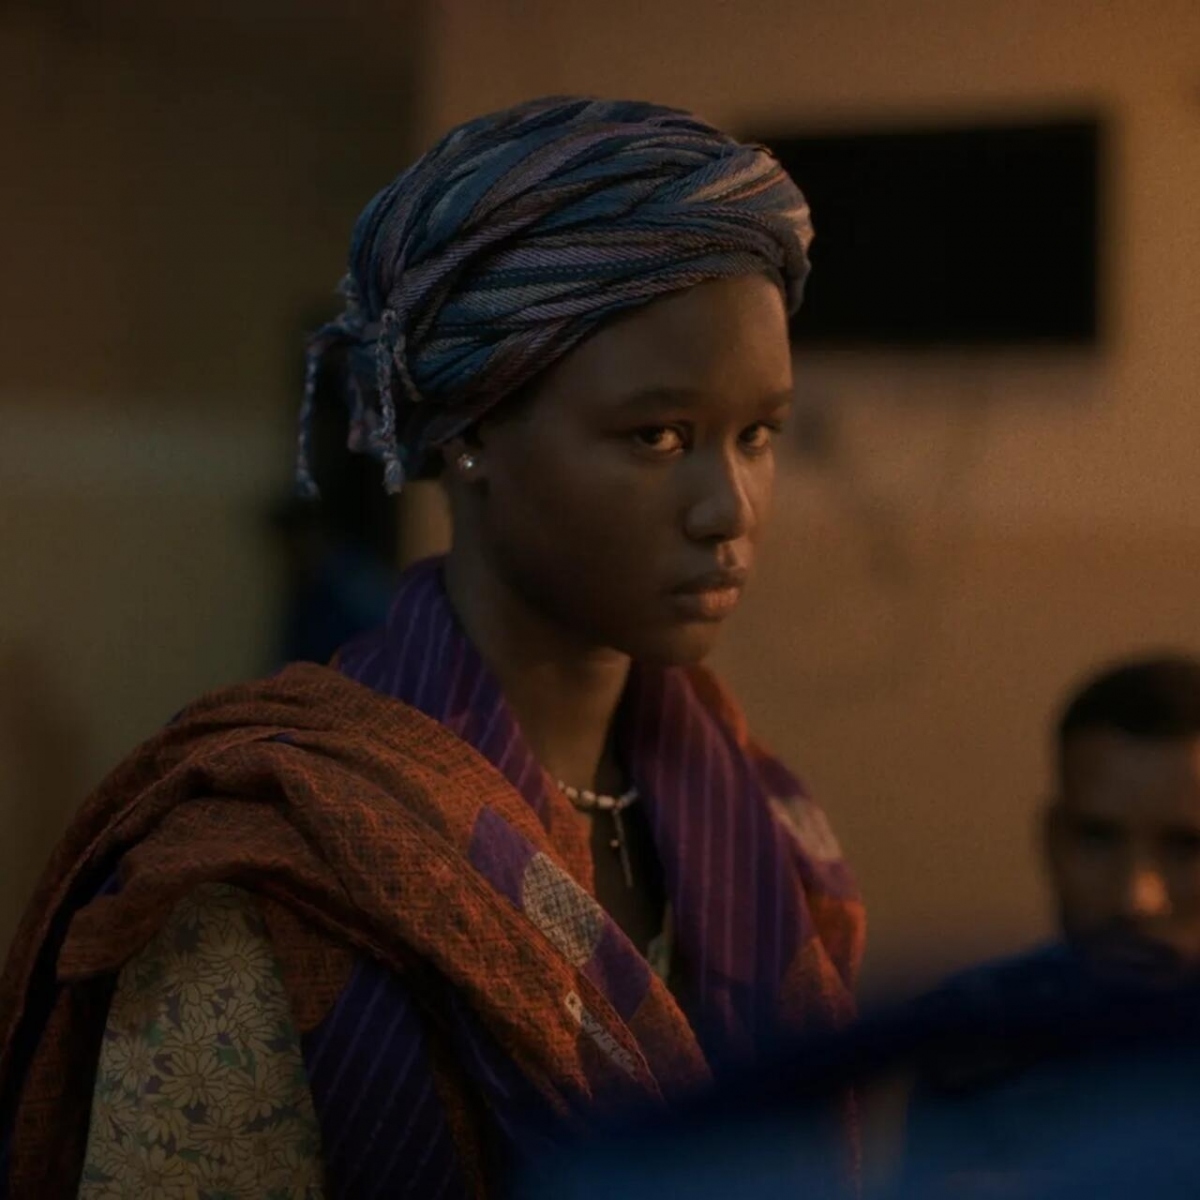 “Tạm biệt Julia”: Phim Sudan tại Cannes mang khát vọng hòa bình